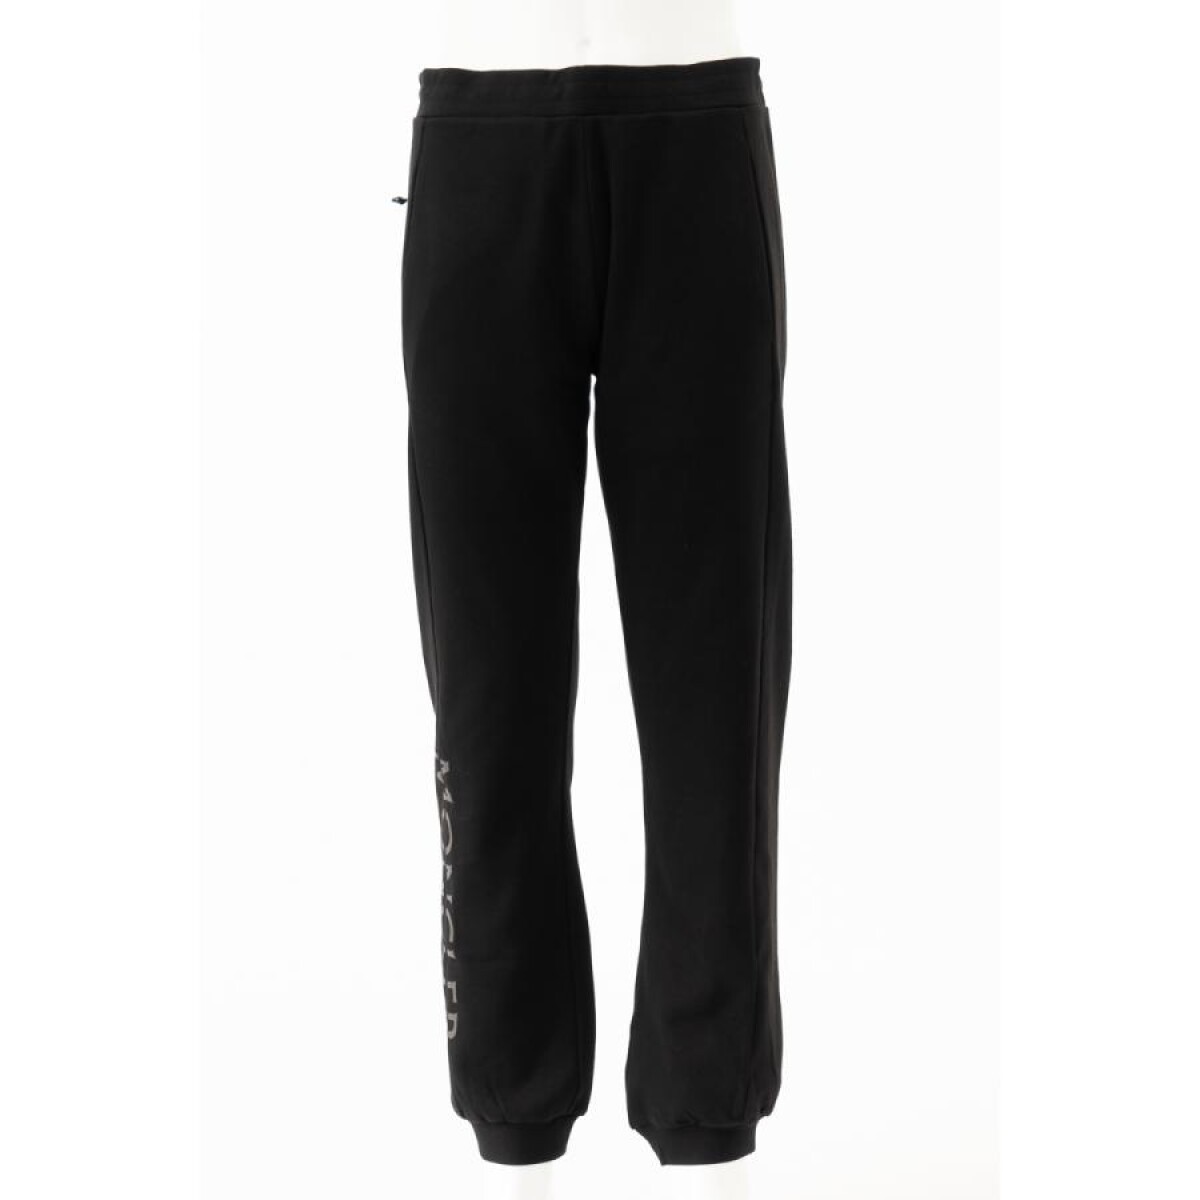 Pantalón deportivo de algodón con bolsillos - Negro 